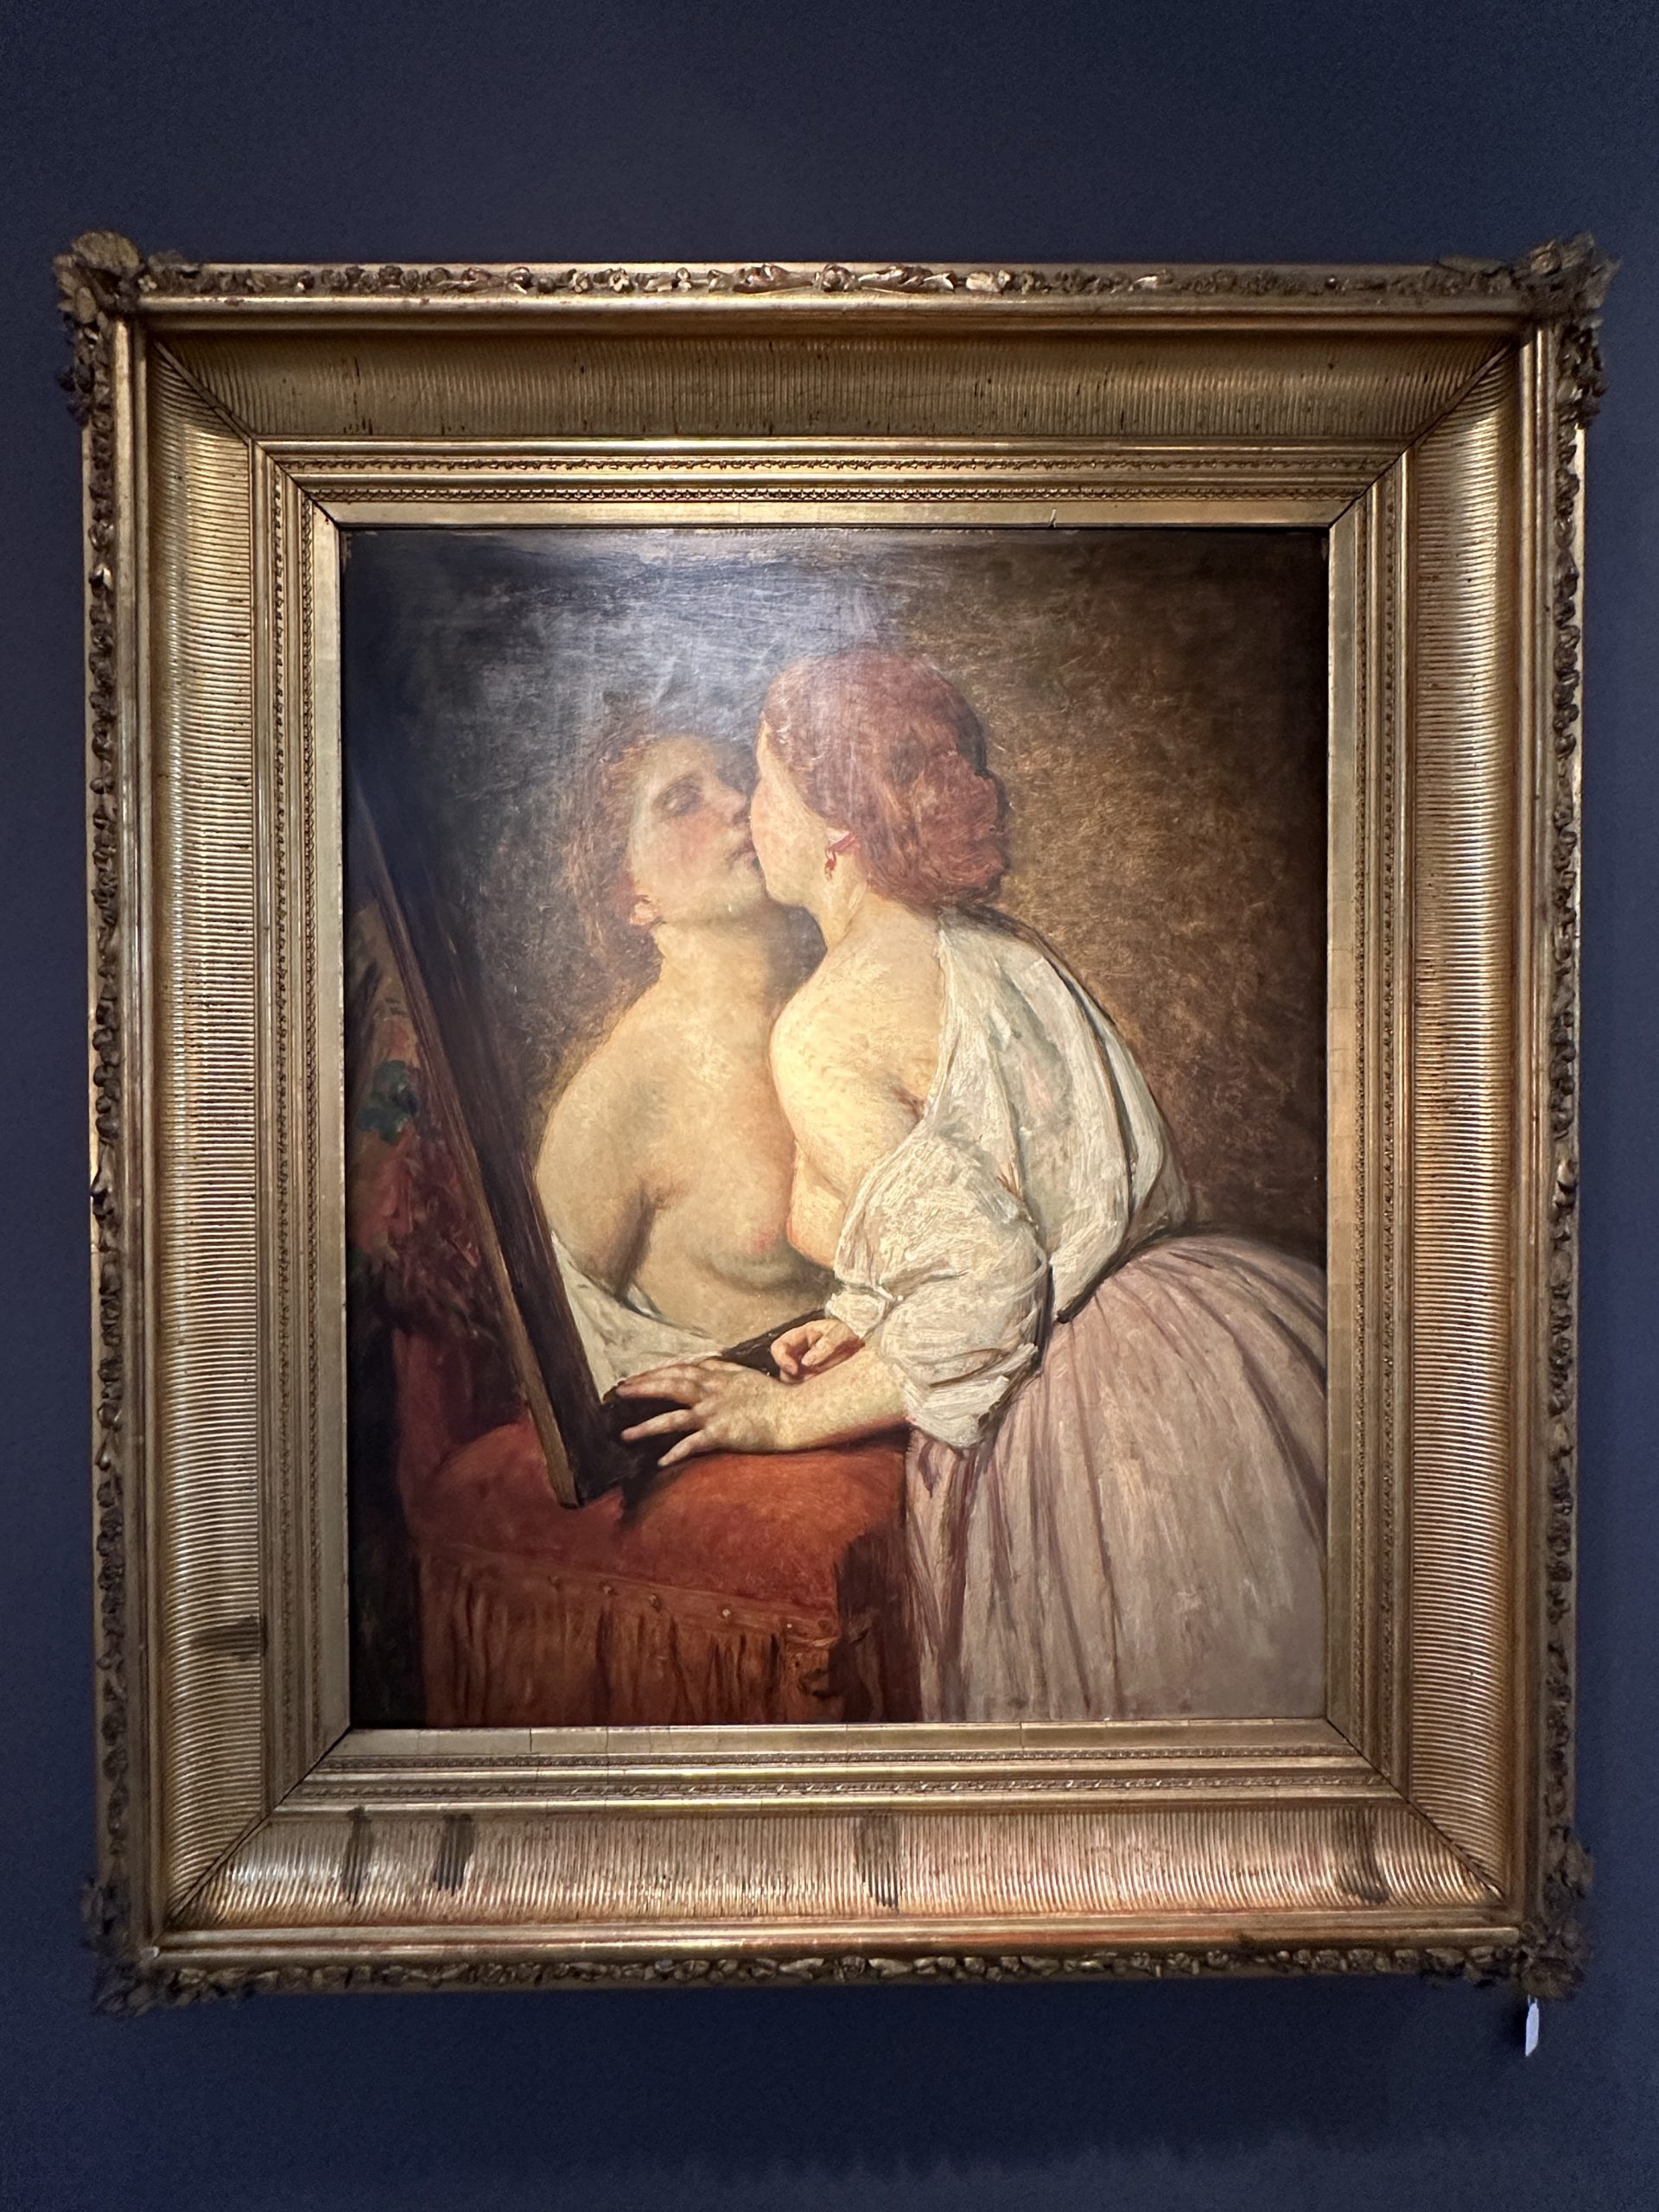 Joseph-Van-Lerius-ecole-begle-XIXe-romantisme-peinture-tableau-le-baiser-aurore-morisse-affaire-conclue-liege-paris-4